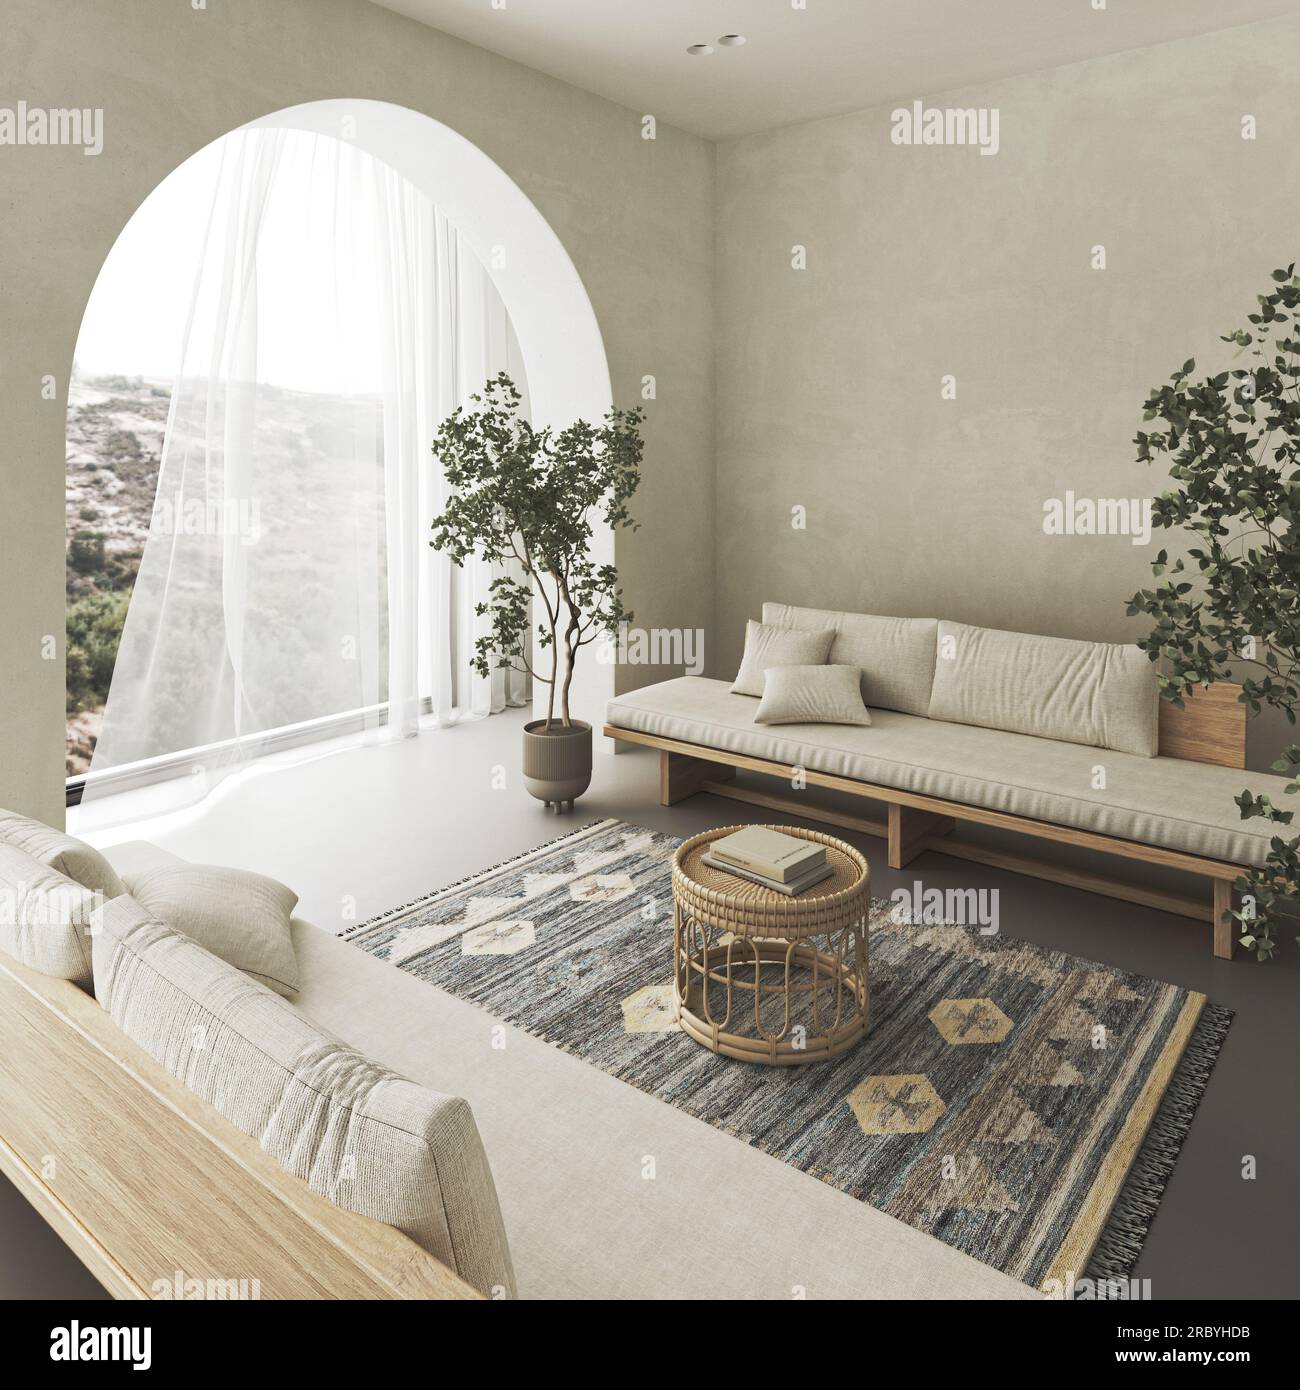 Salon intérieur conceptuel avec mur en arc beige stuc. Banc en bois de composition créative avec table en osier de couleur pastel. Maquette vide Banque D'Images